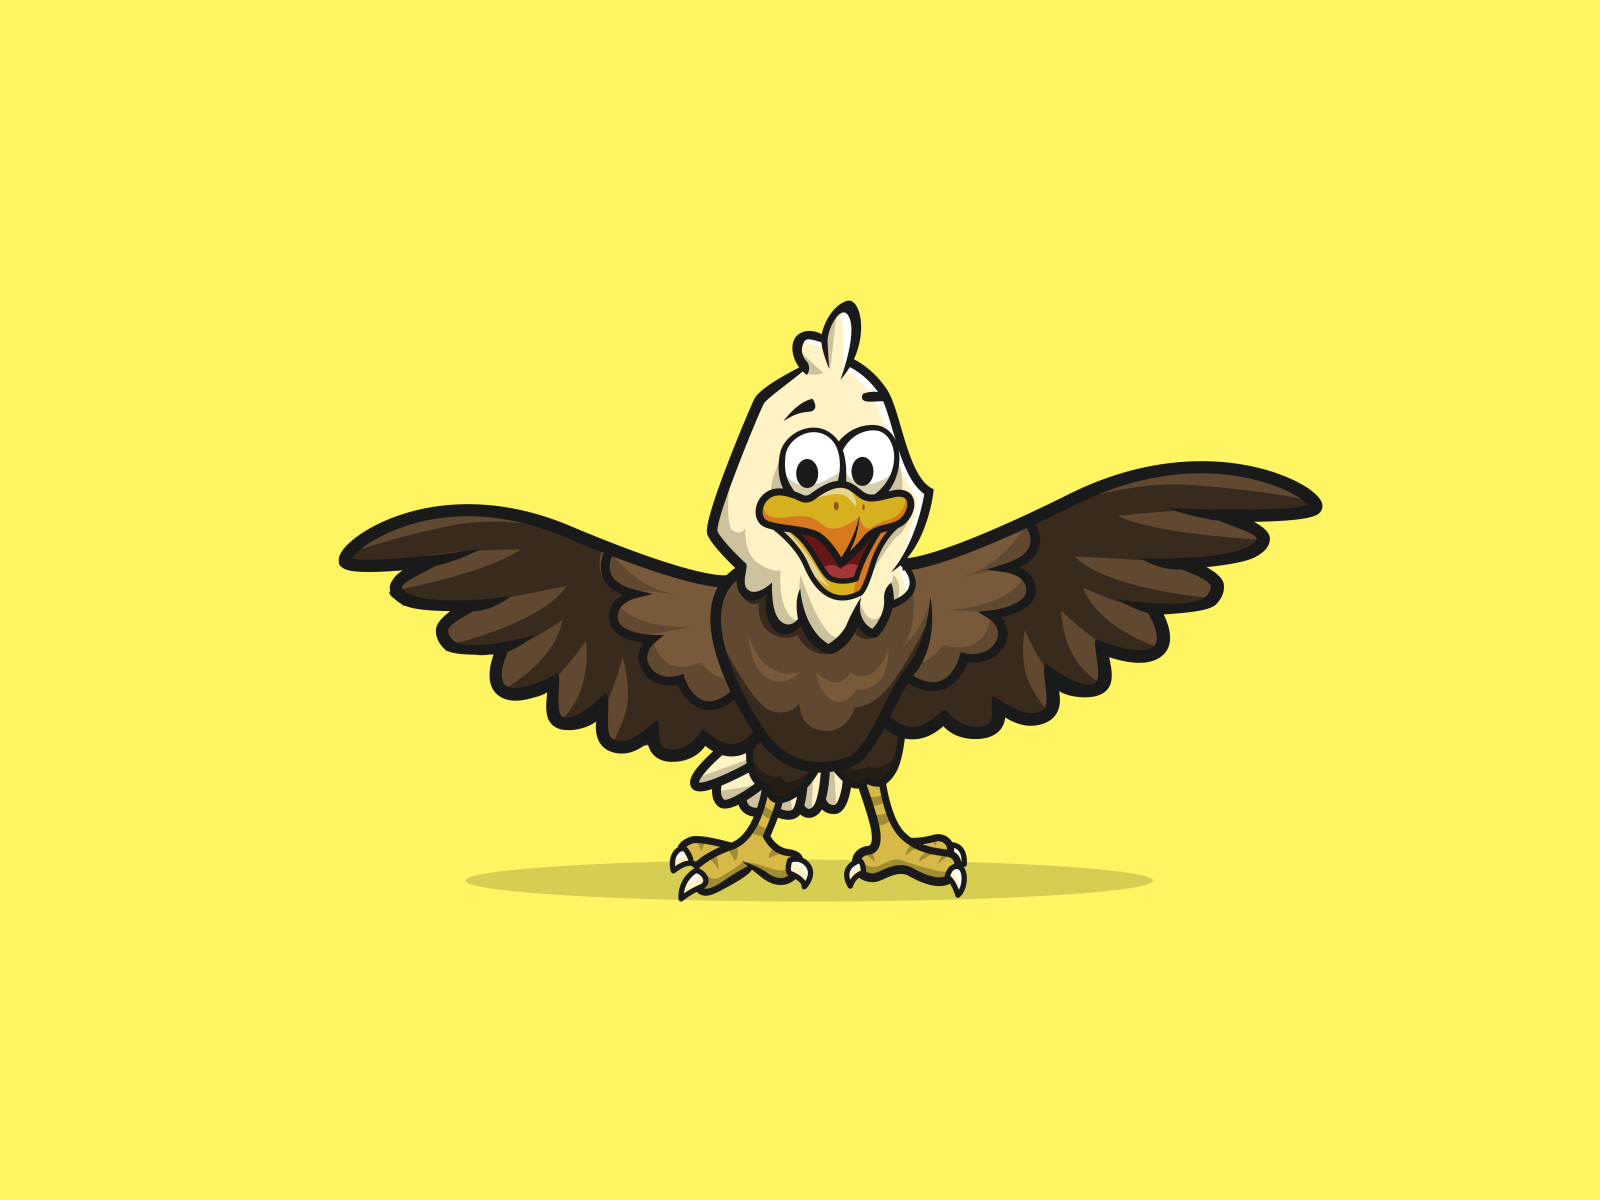 Eagle cartoon character by Muhammad Fadhel on Dribbble